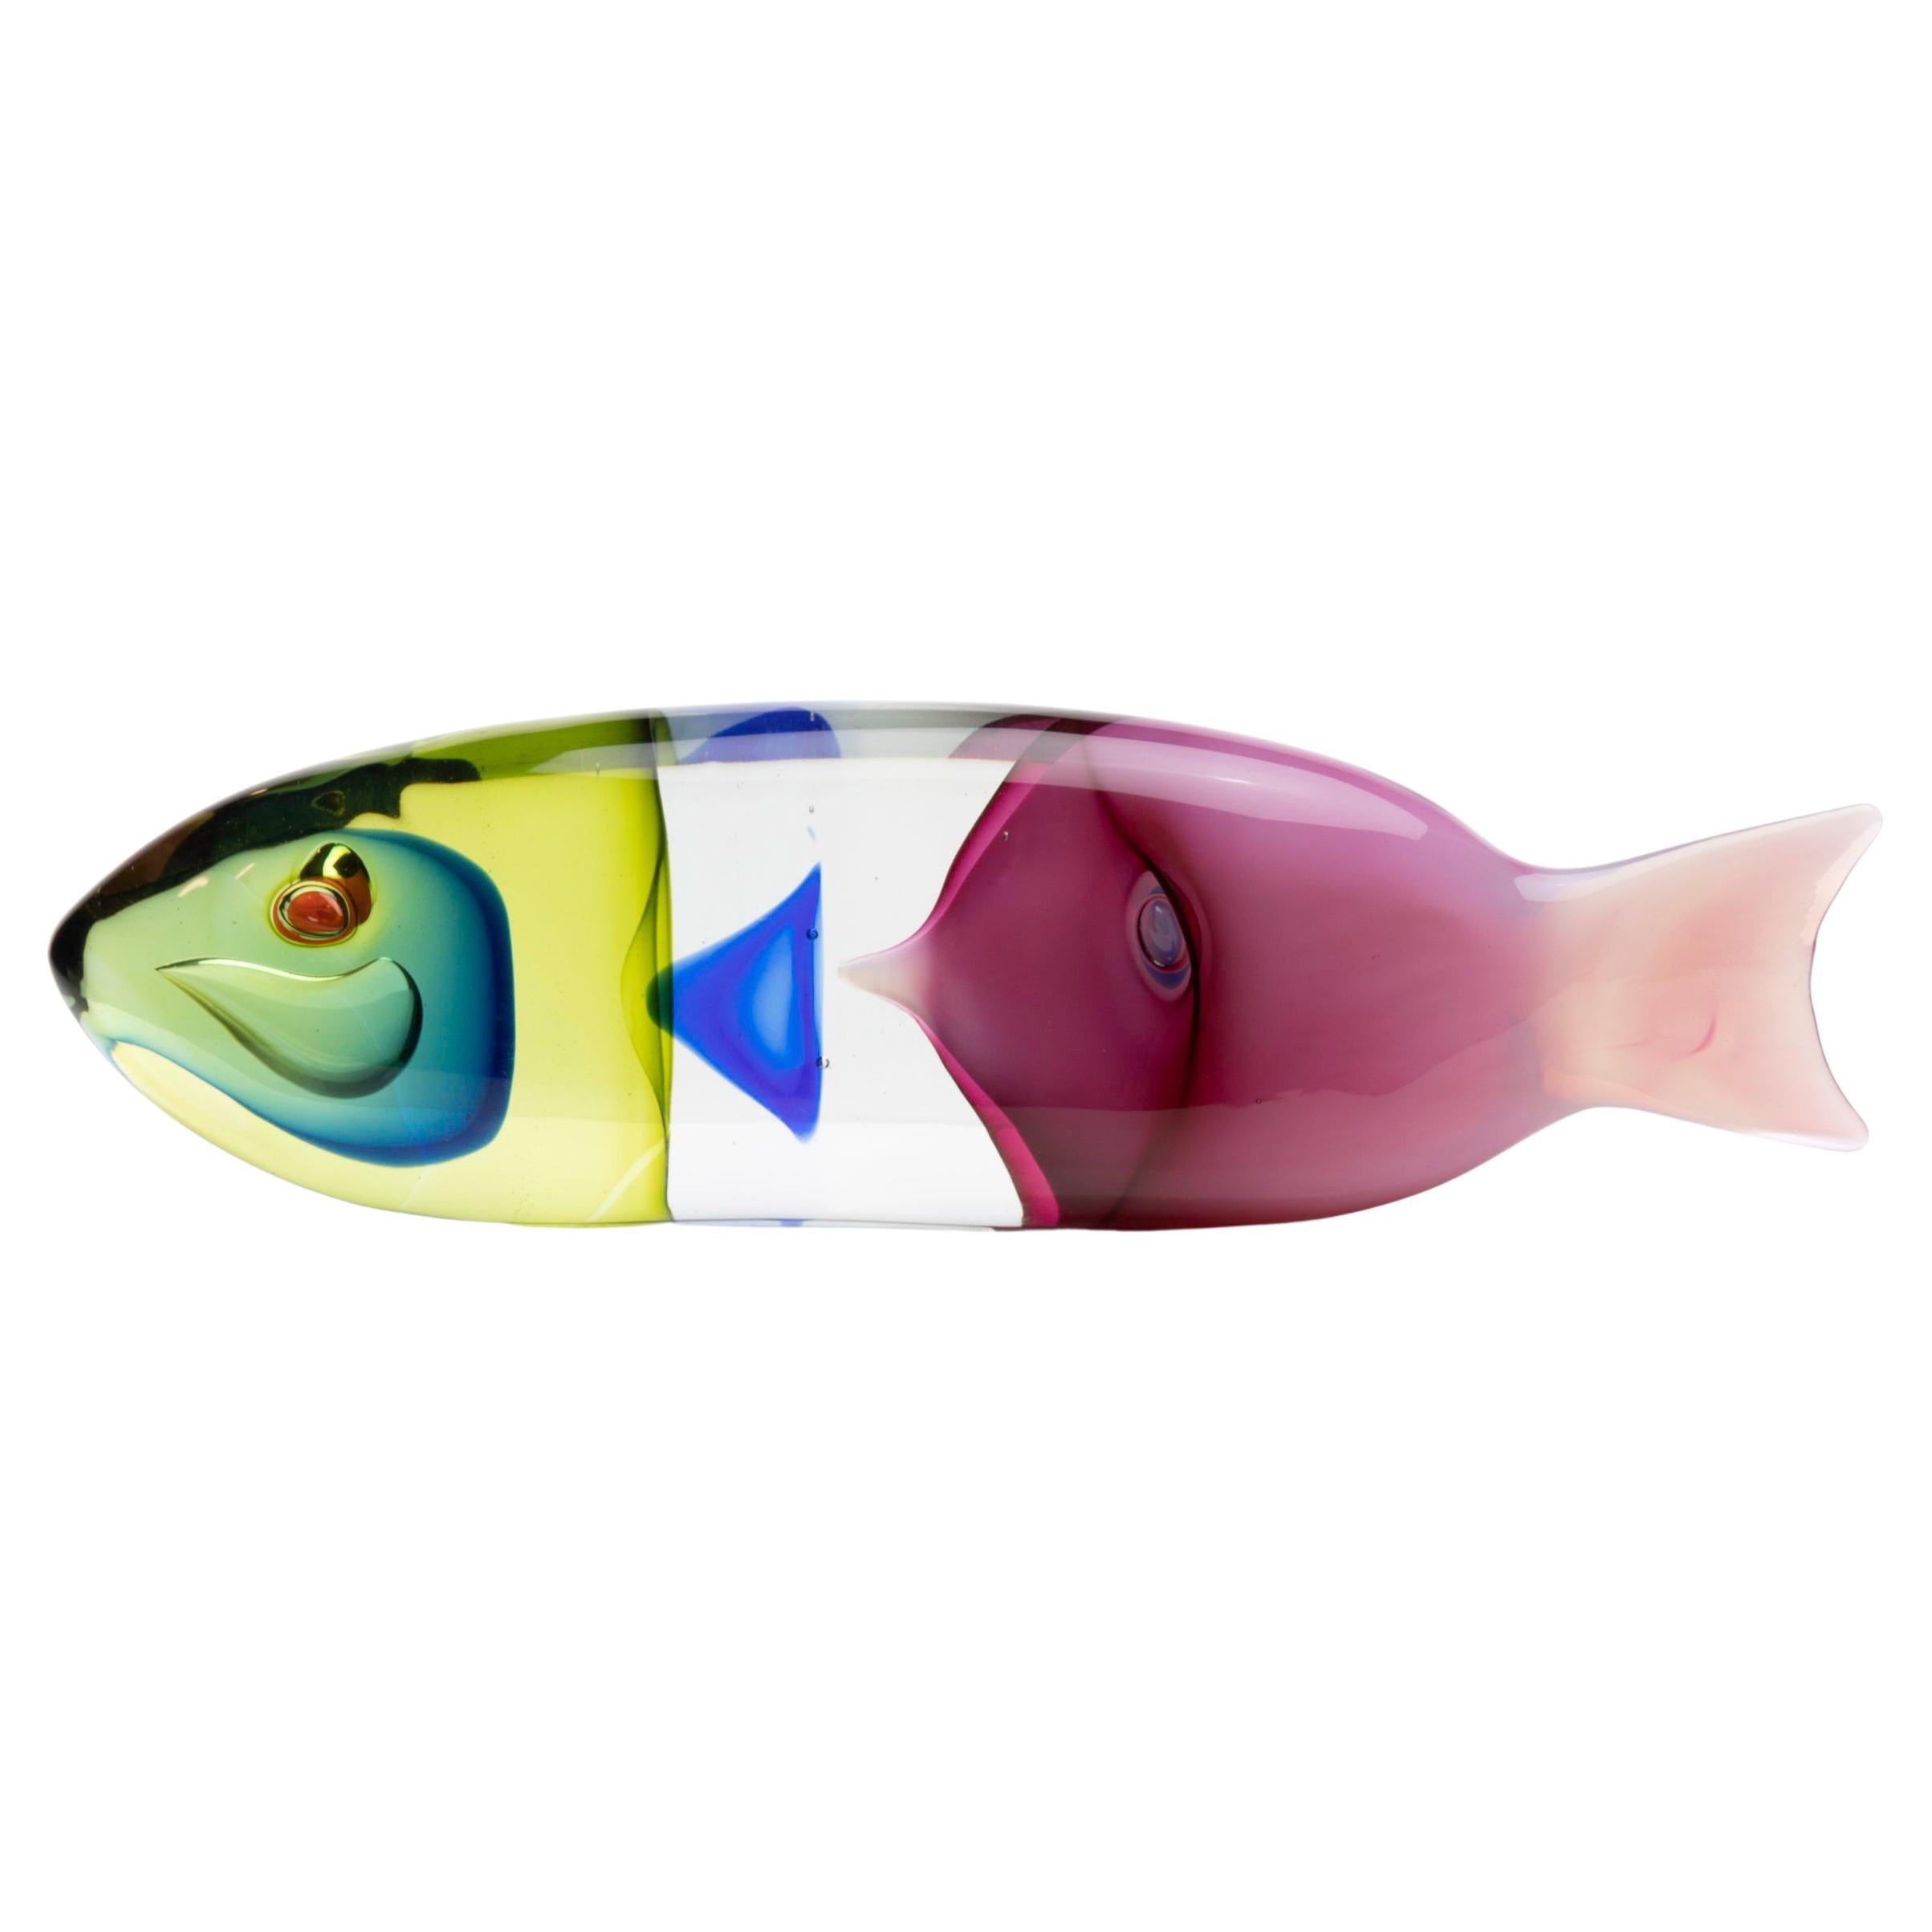 Fish in a Fish, Blown Glass Sculpture, Antonio da Ros, Cenedese Murano 'Italy'